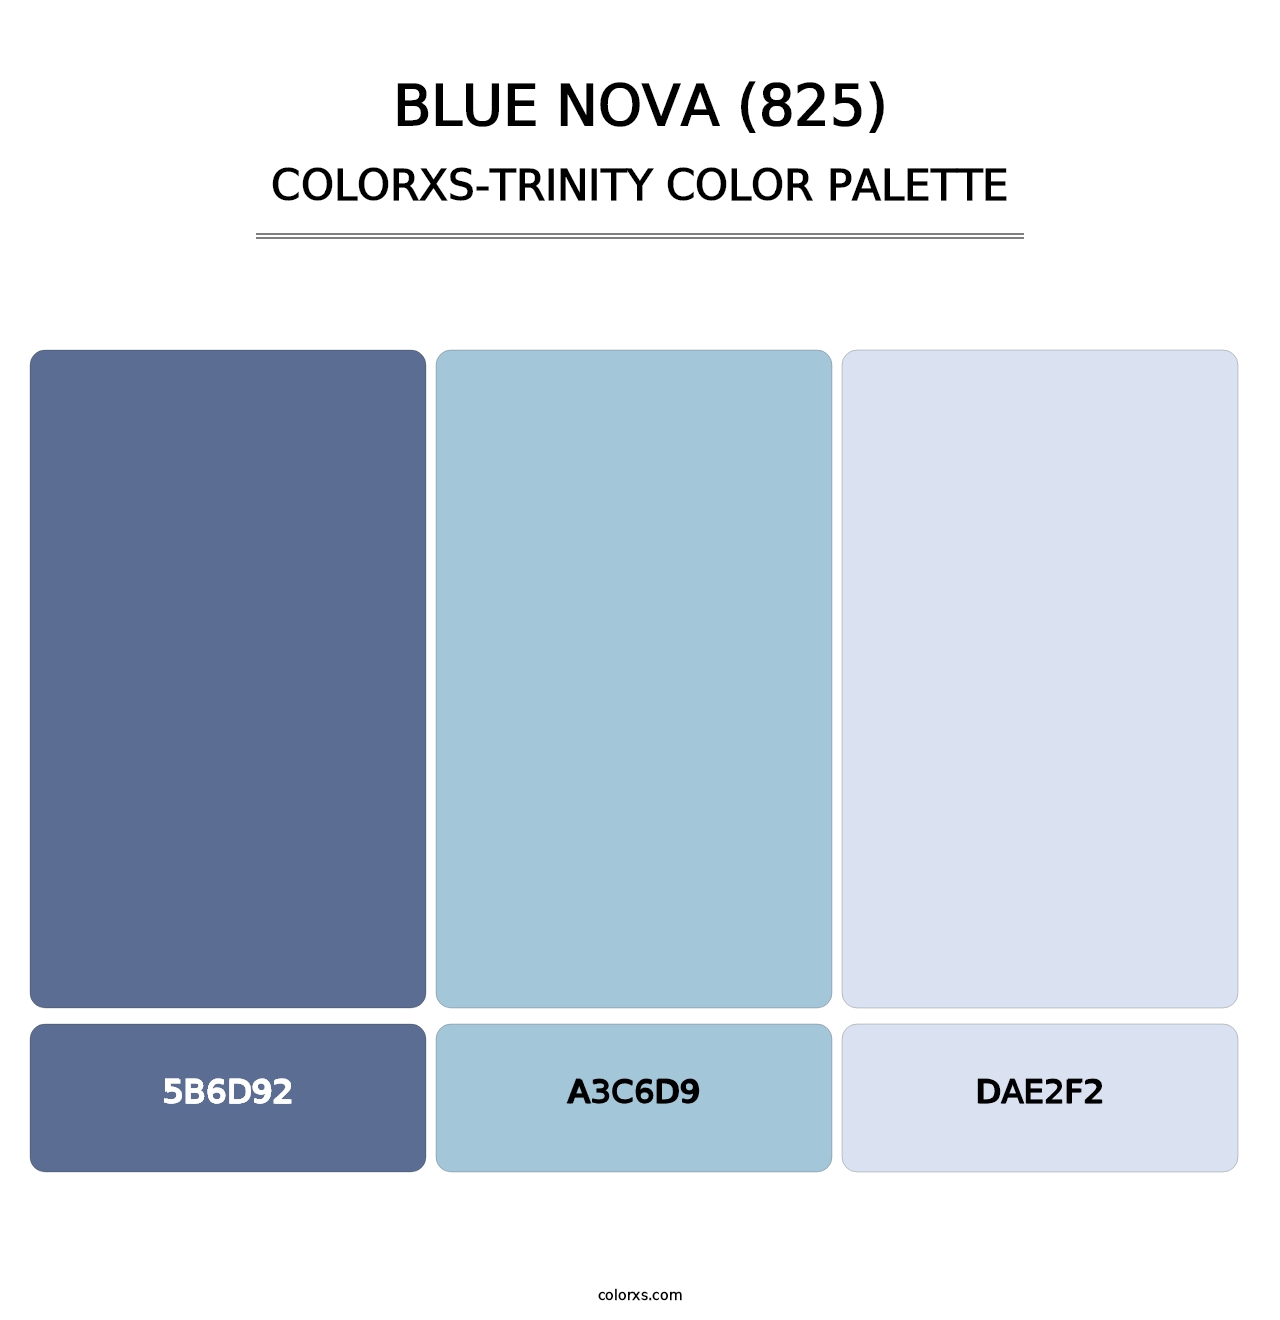 Blue Nova (825) - Colorxs Trinity Palette